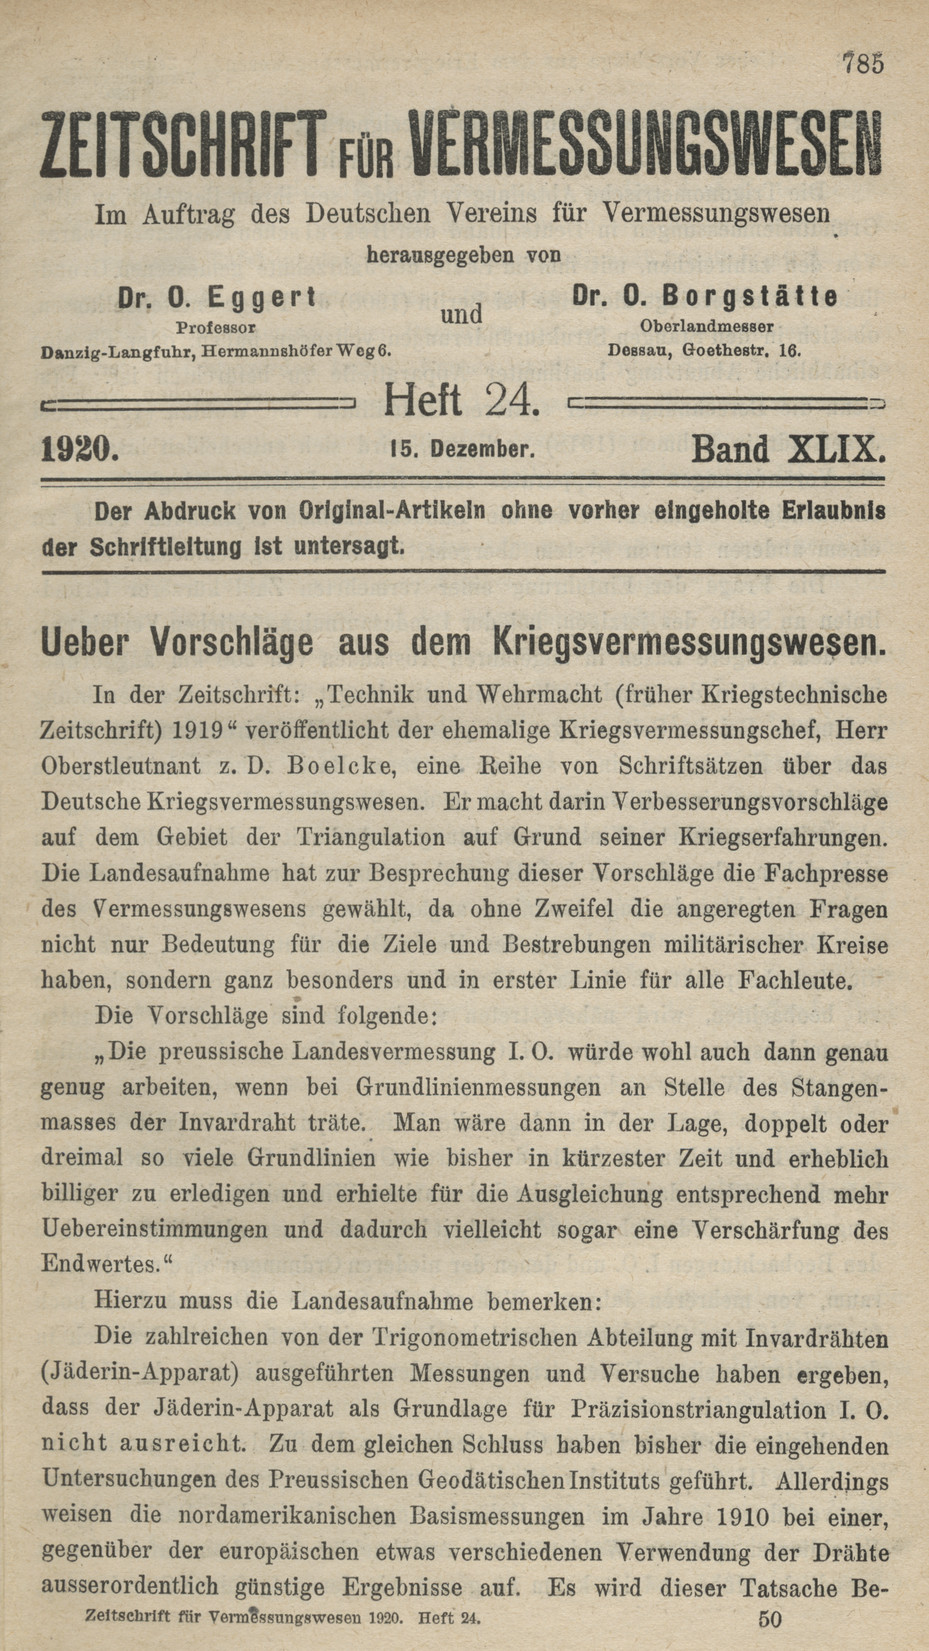 Zeitschrift für Vermessungswesen, Heft 24, Band XLIX